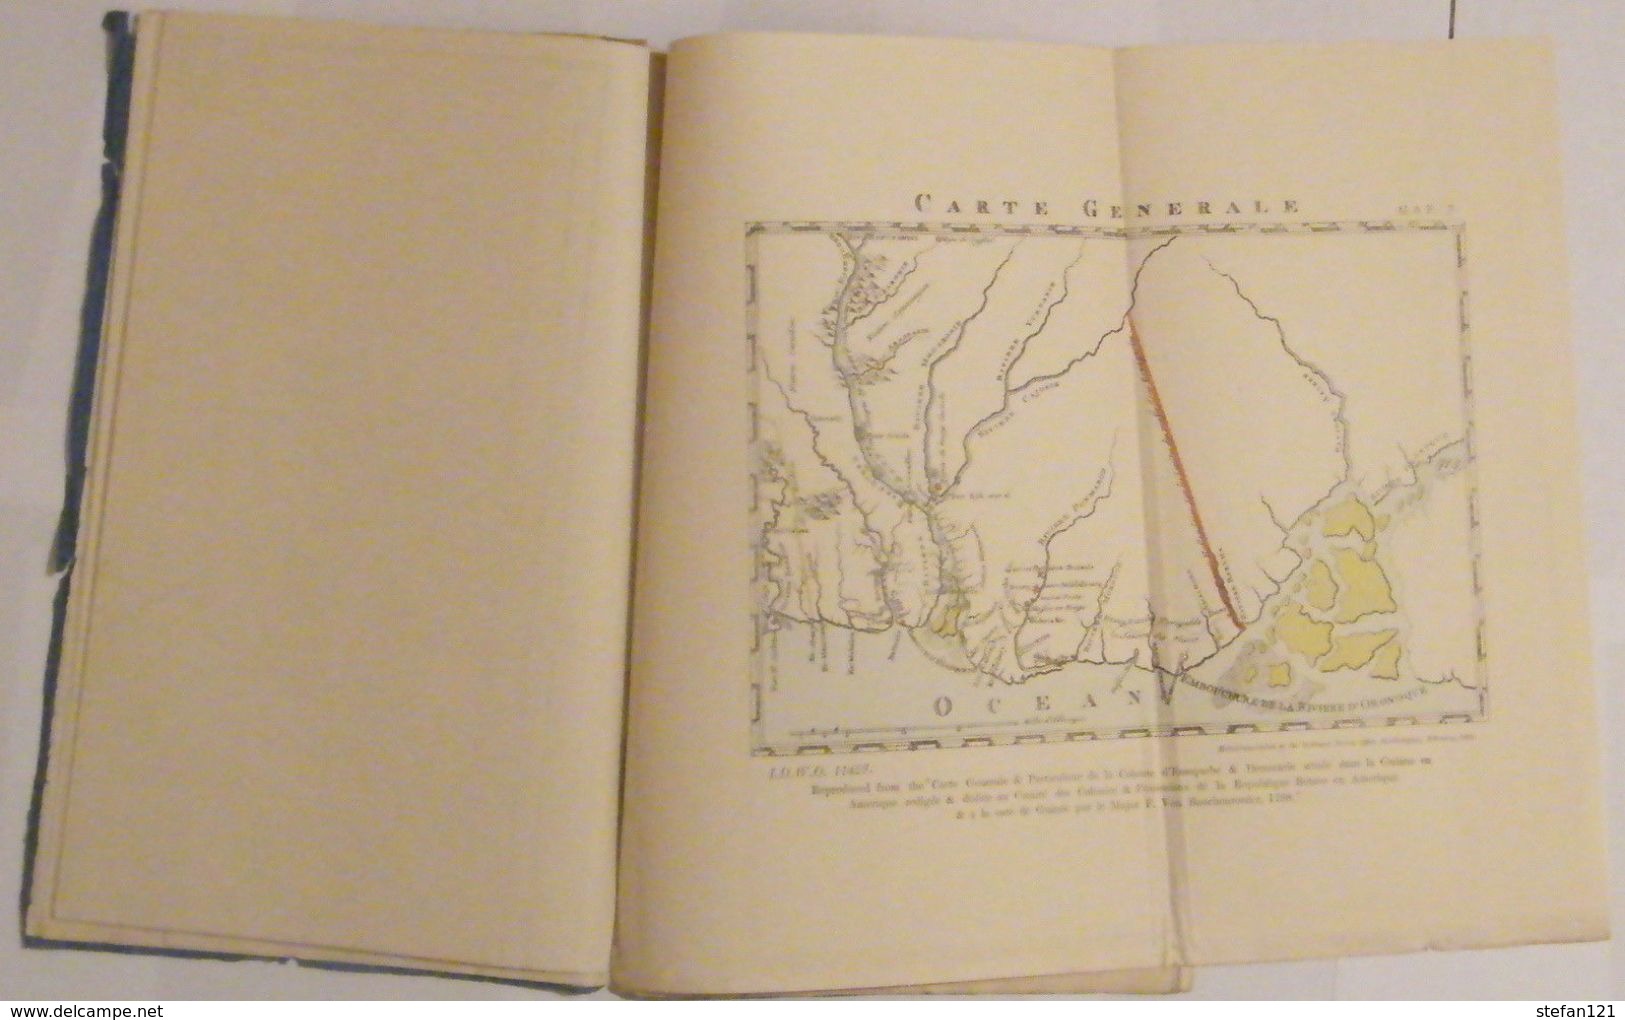 Venezuela N° 1 (1896) Appendix N° III - Maps to Accompany documents ...Guiana ..